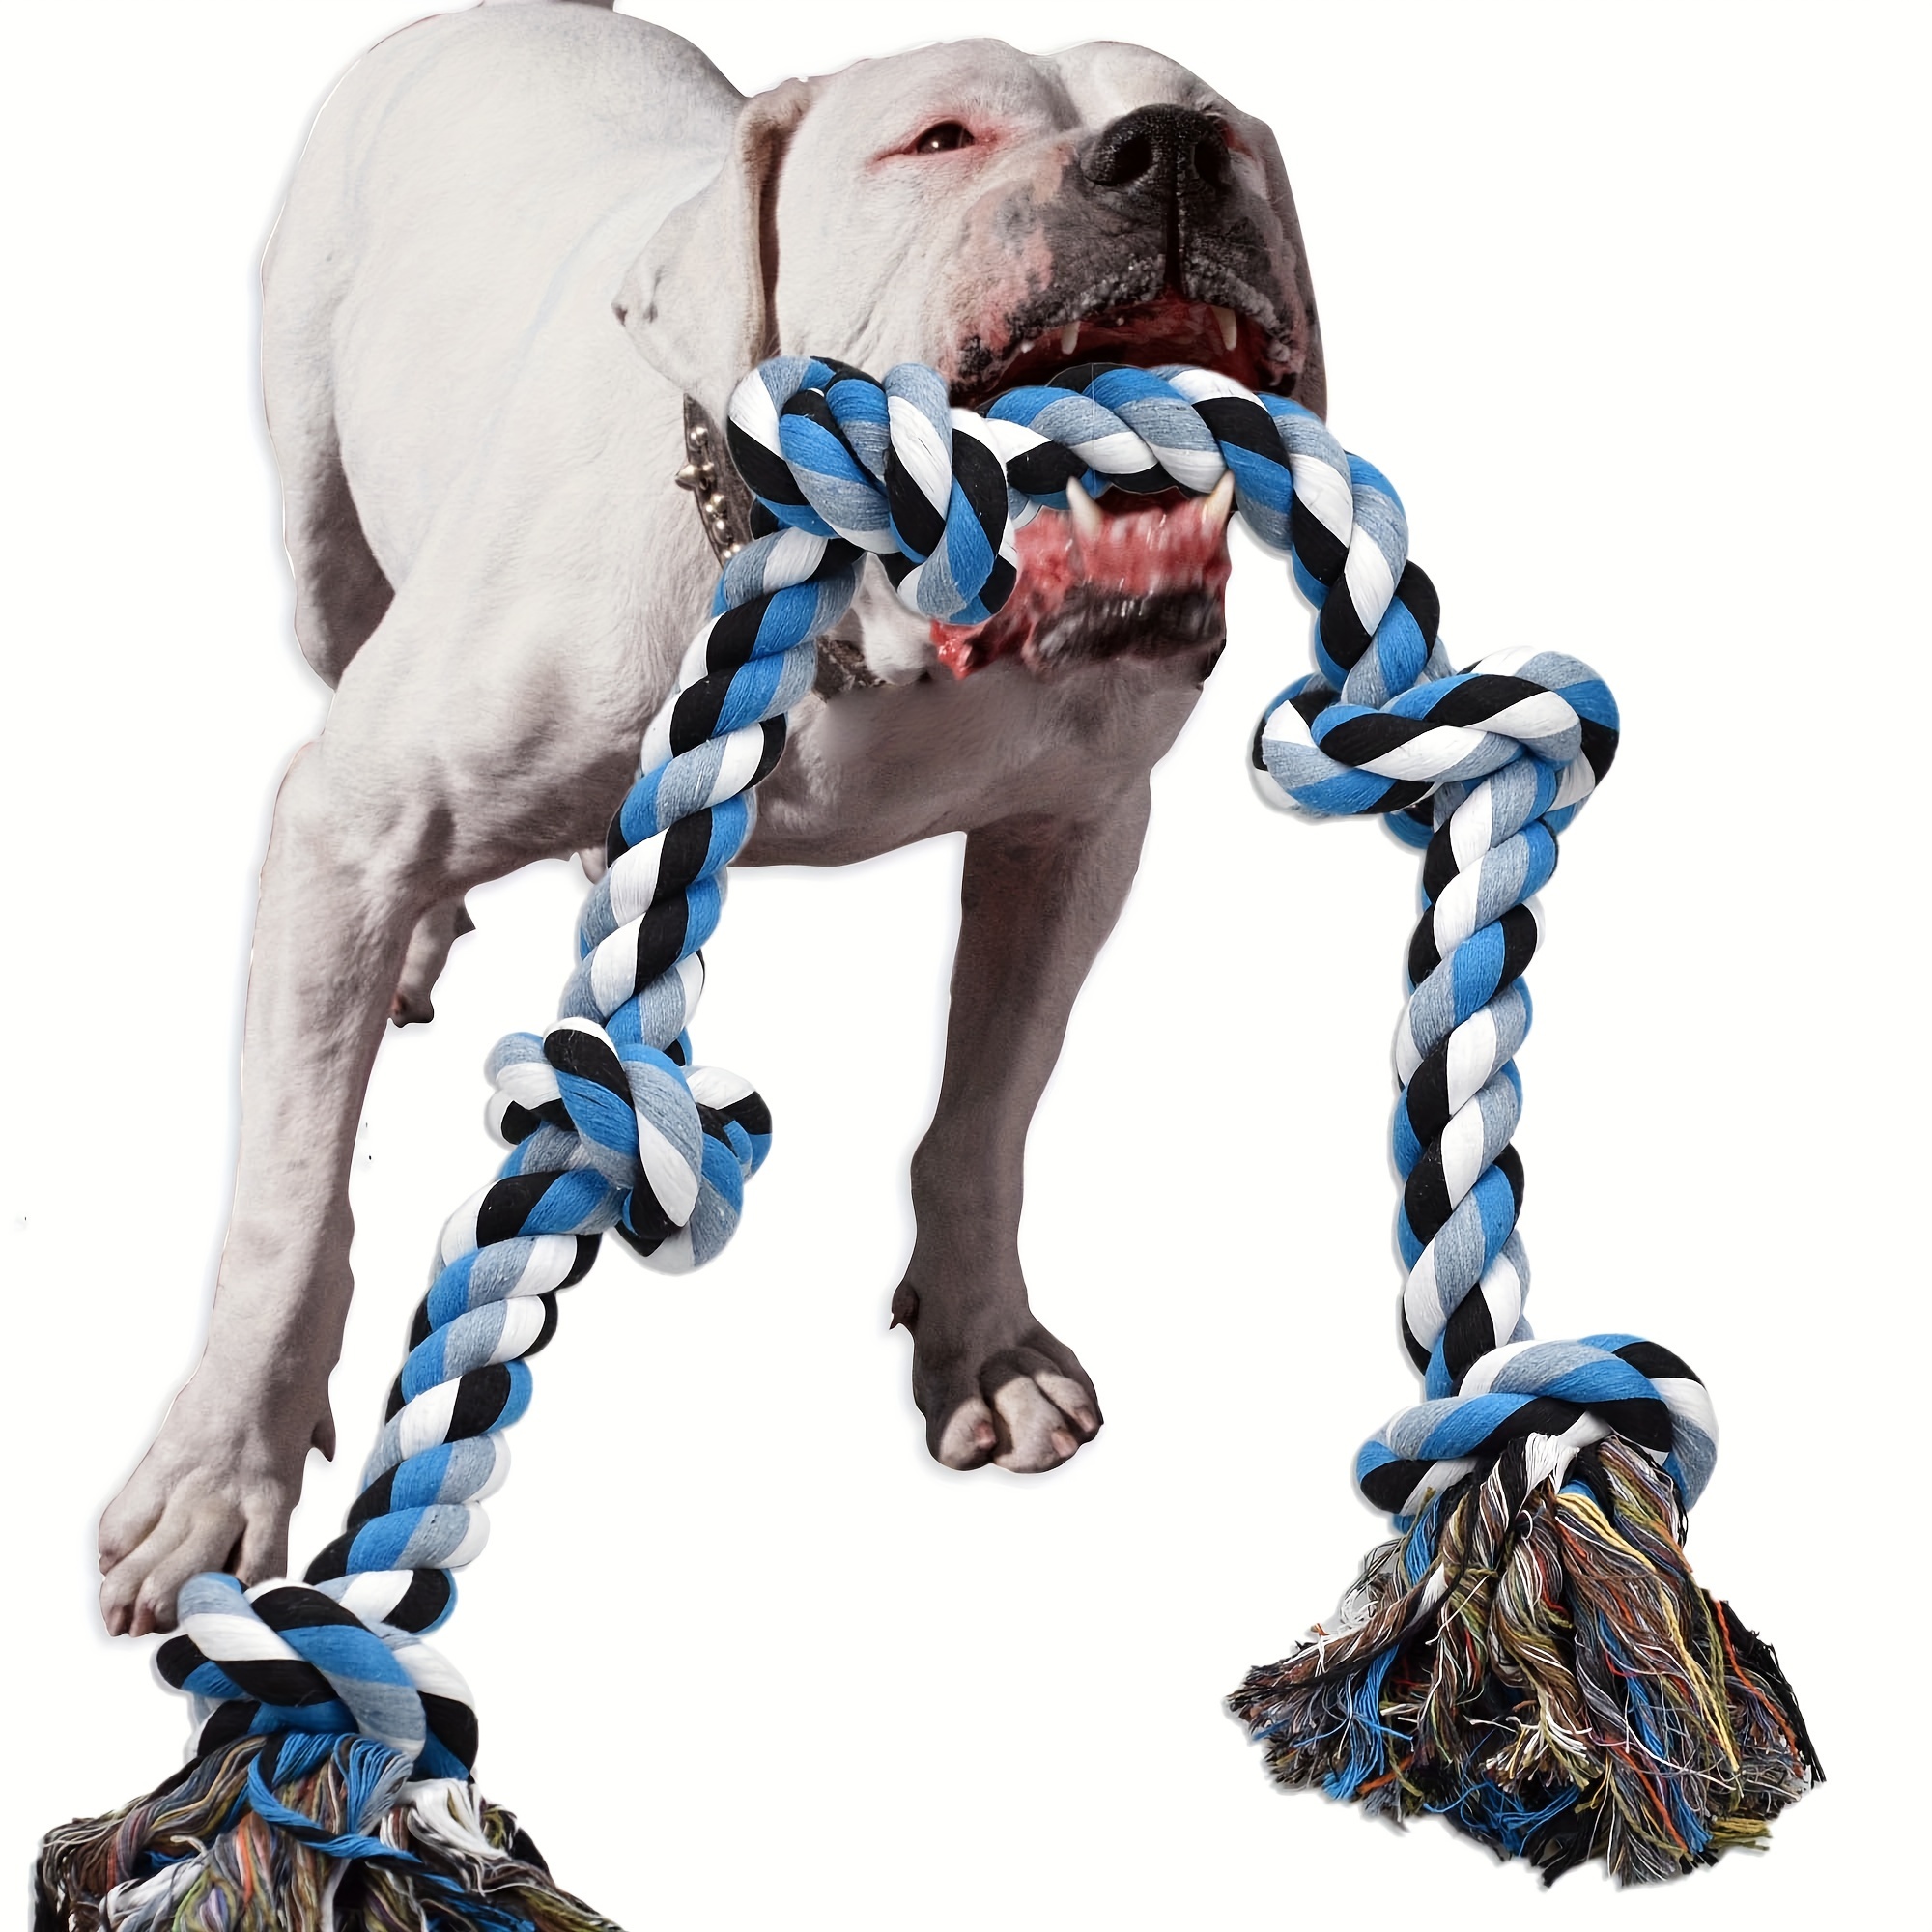 

Jouet en corde en coton robuste pour grands chiens, mâcheurs agressifs - Jouet indestructible pour le tir à la corde et le nettoyage des dents pour les grandes races